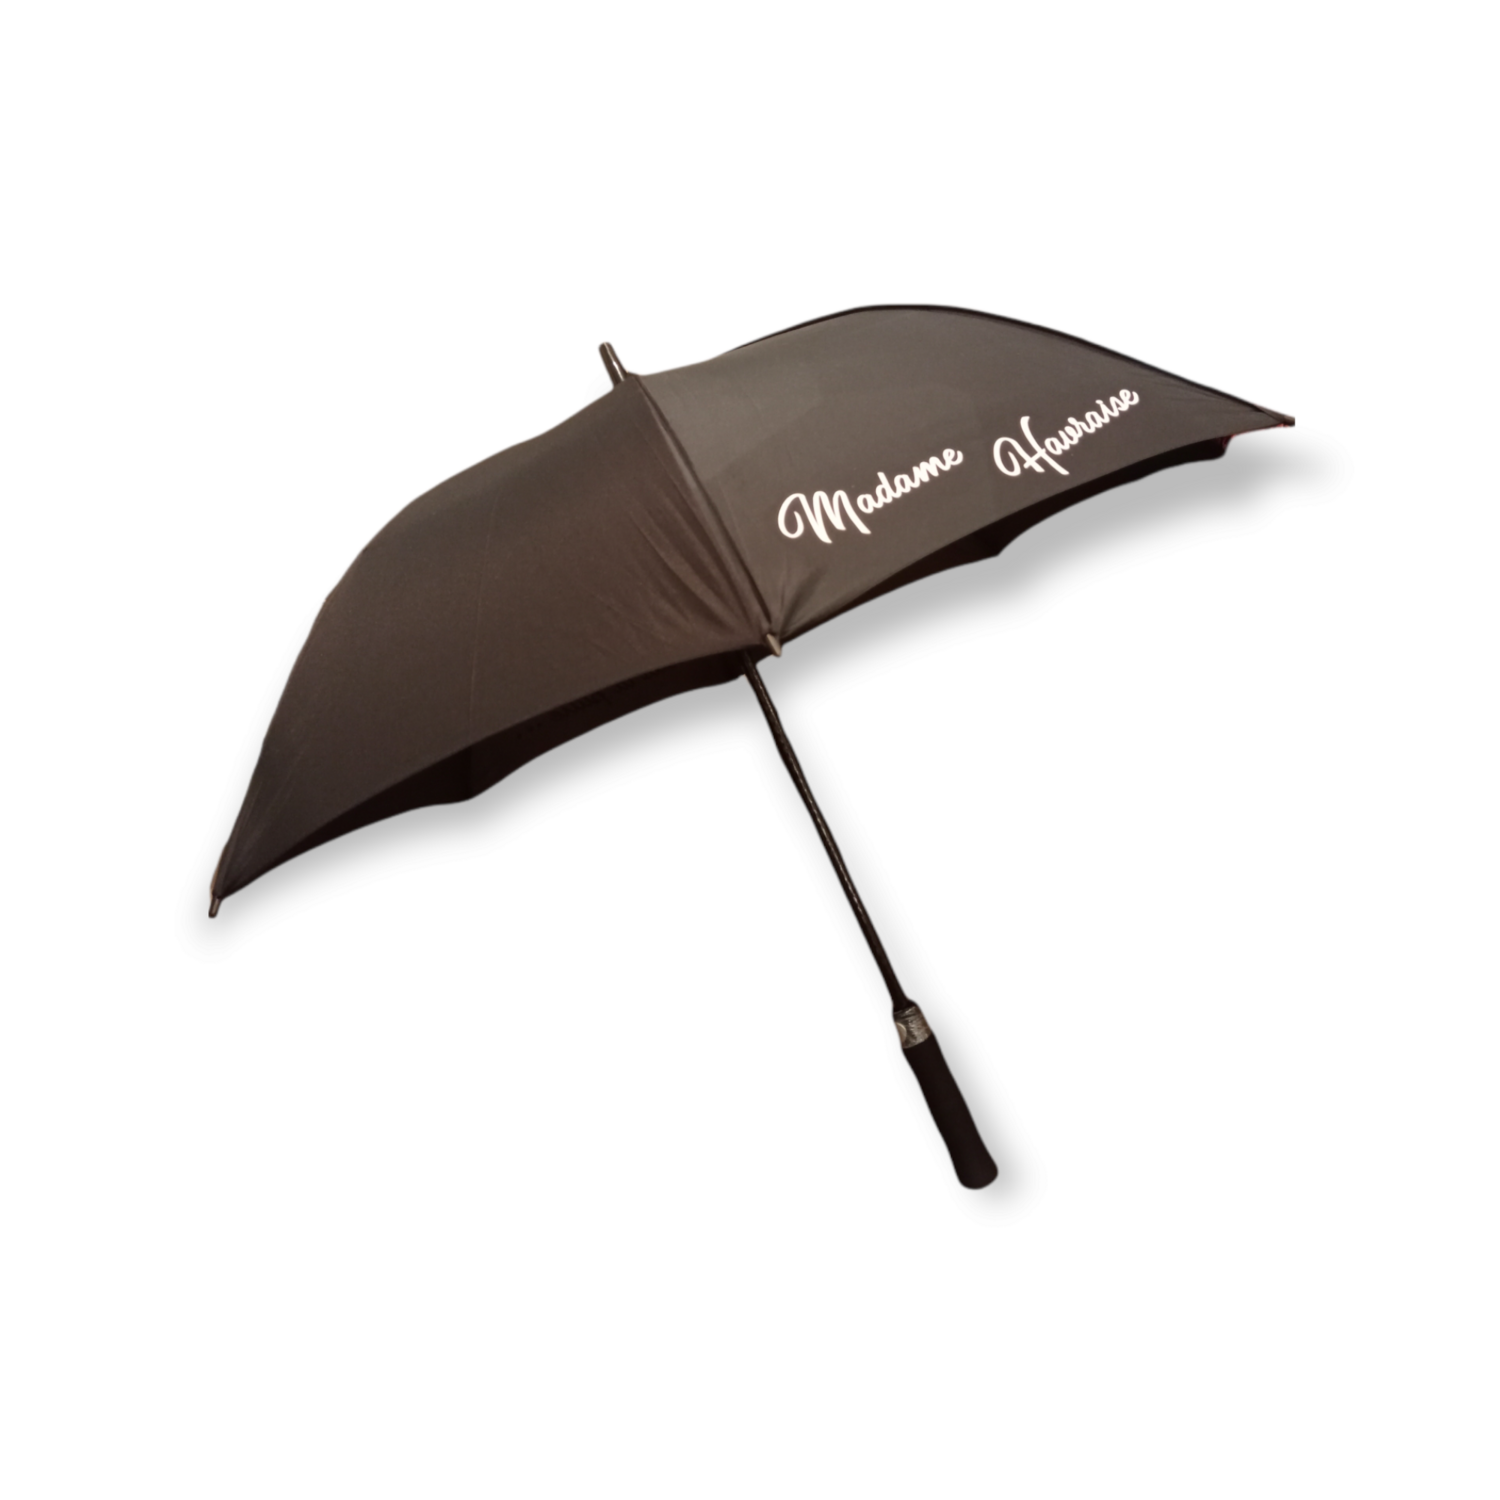 Parapluie de Golf